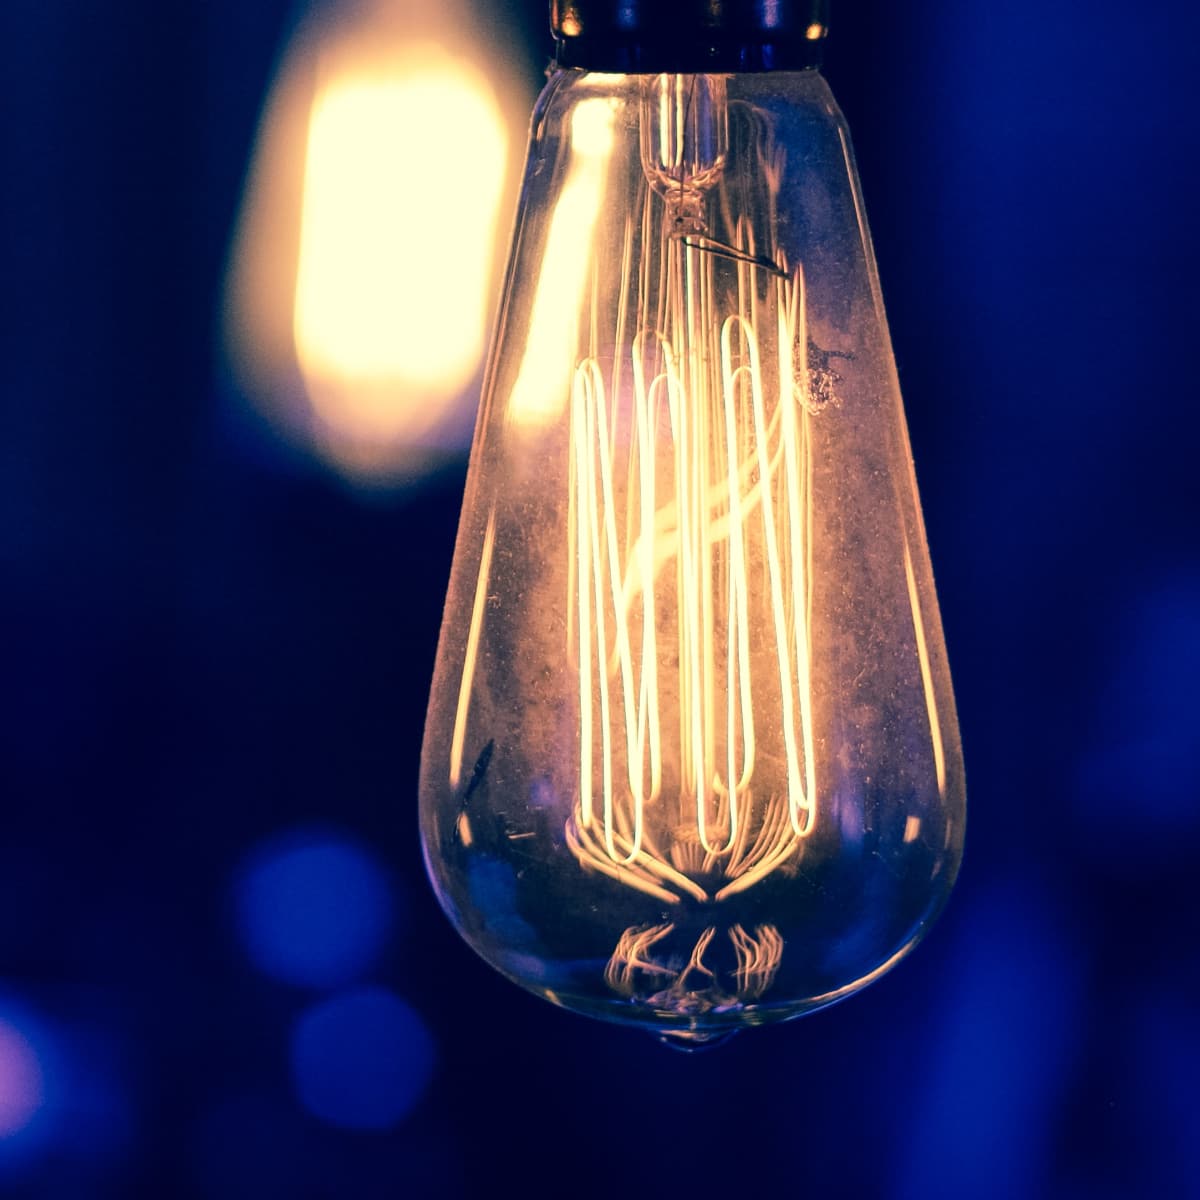 Руководство по освещению - Лампочка Эдисона "